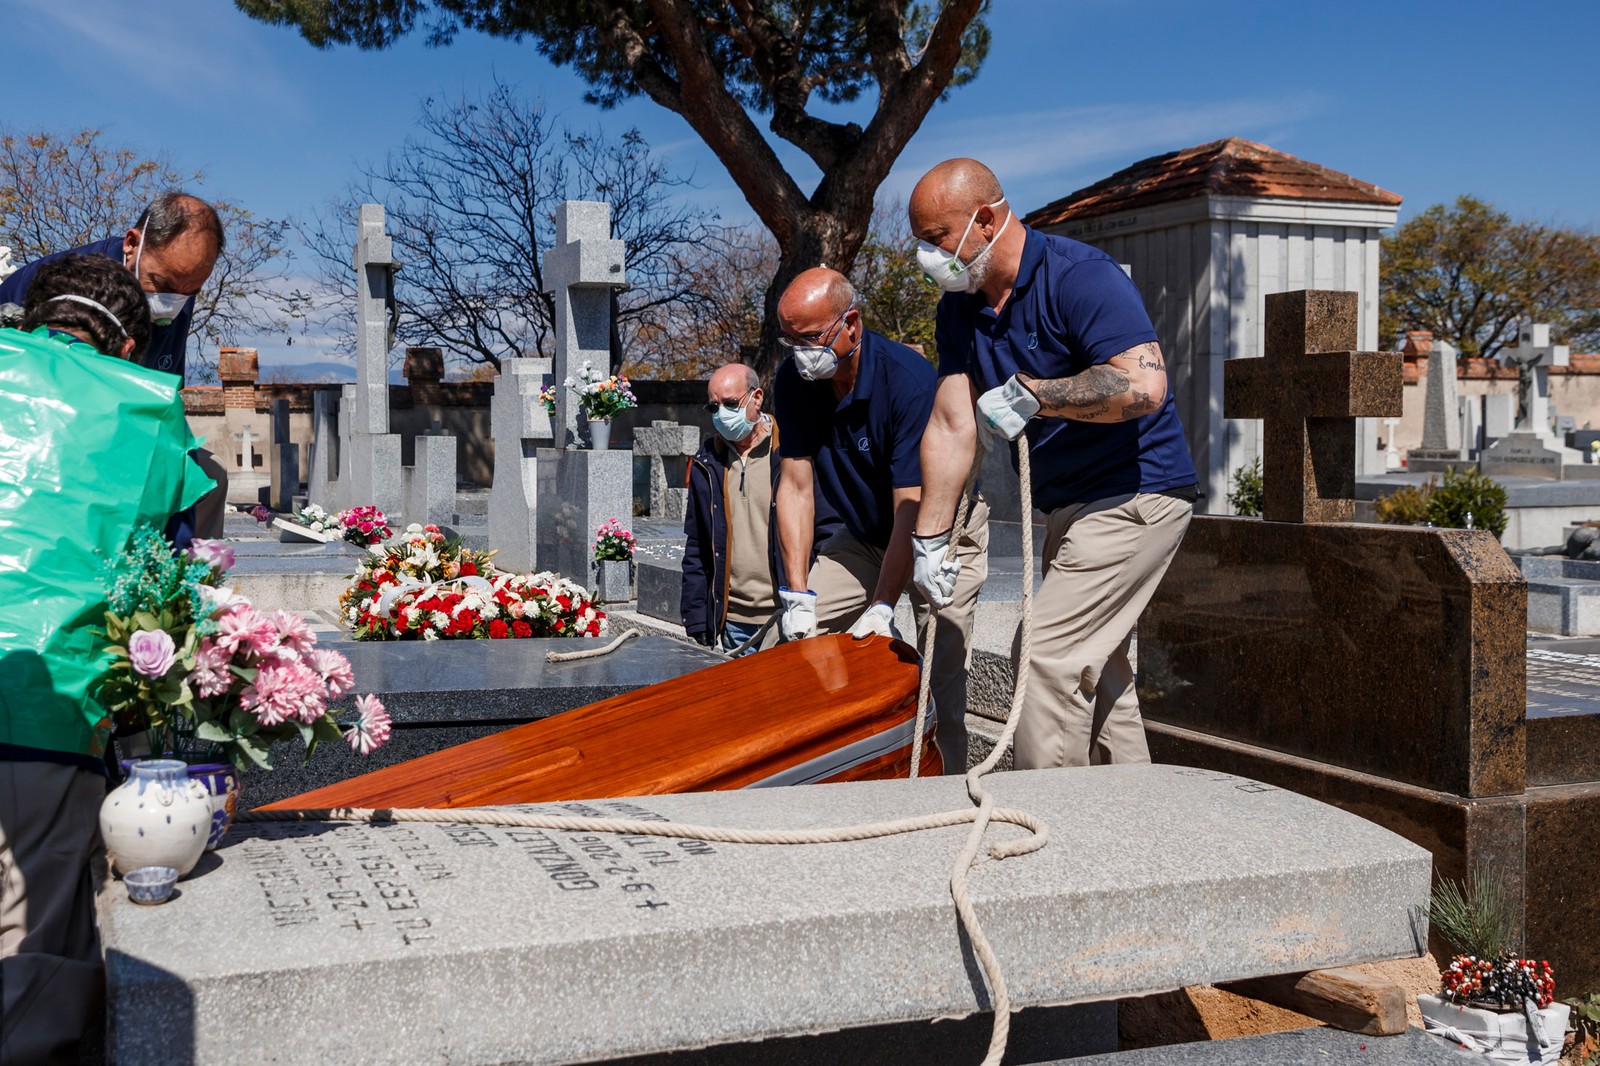 Funcionários de uma funerária usam máscaras durante o enterro de vítima da COVID-19 no cemitério de Fuencarral em Madri, na Espanha